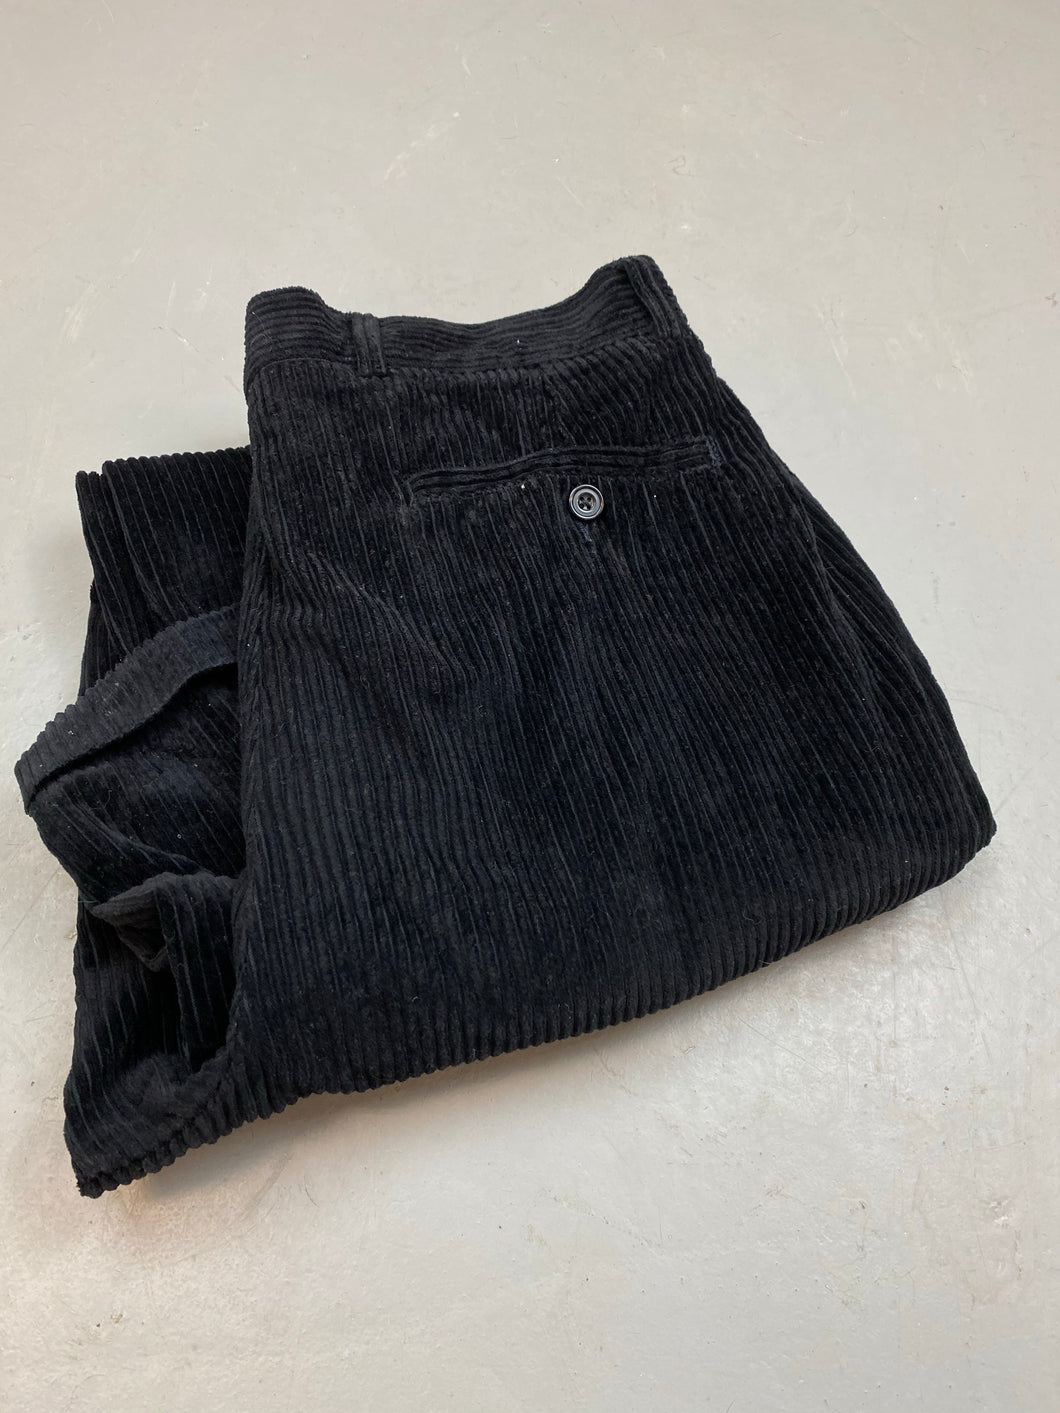 Vintage pleated corduroy pants